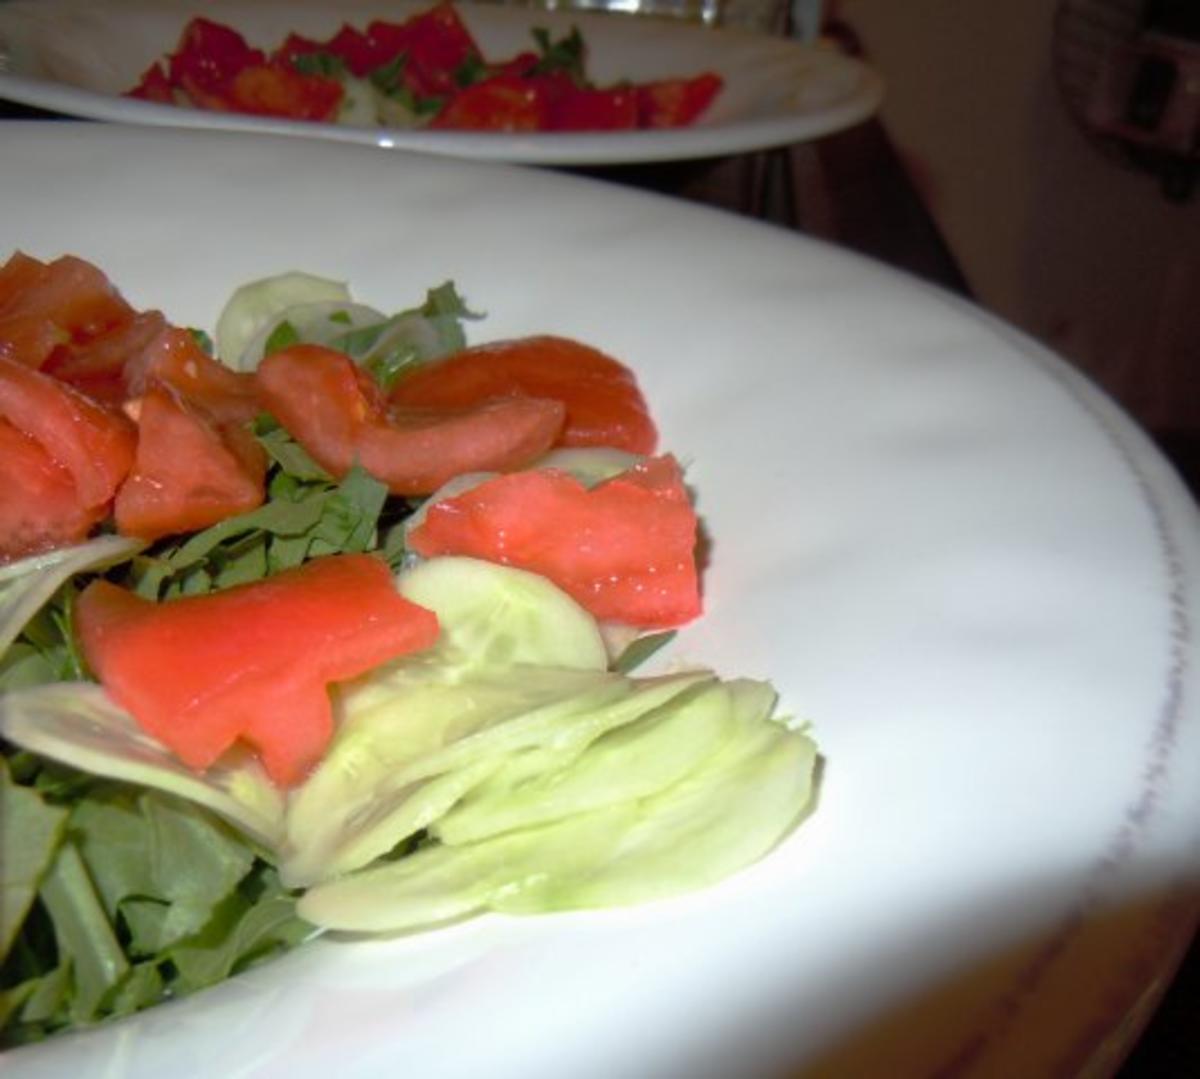 Rinderhack im Speckmantel auf Salat mit Melonendressing - Rezept - Bild Nr. 2